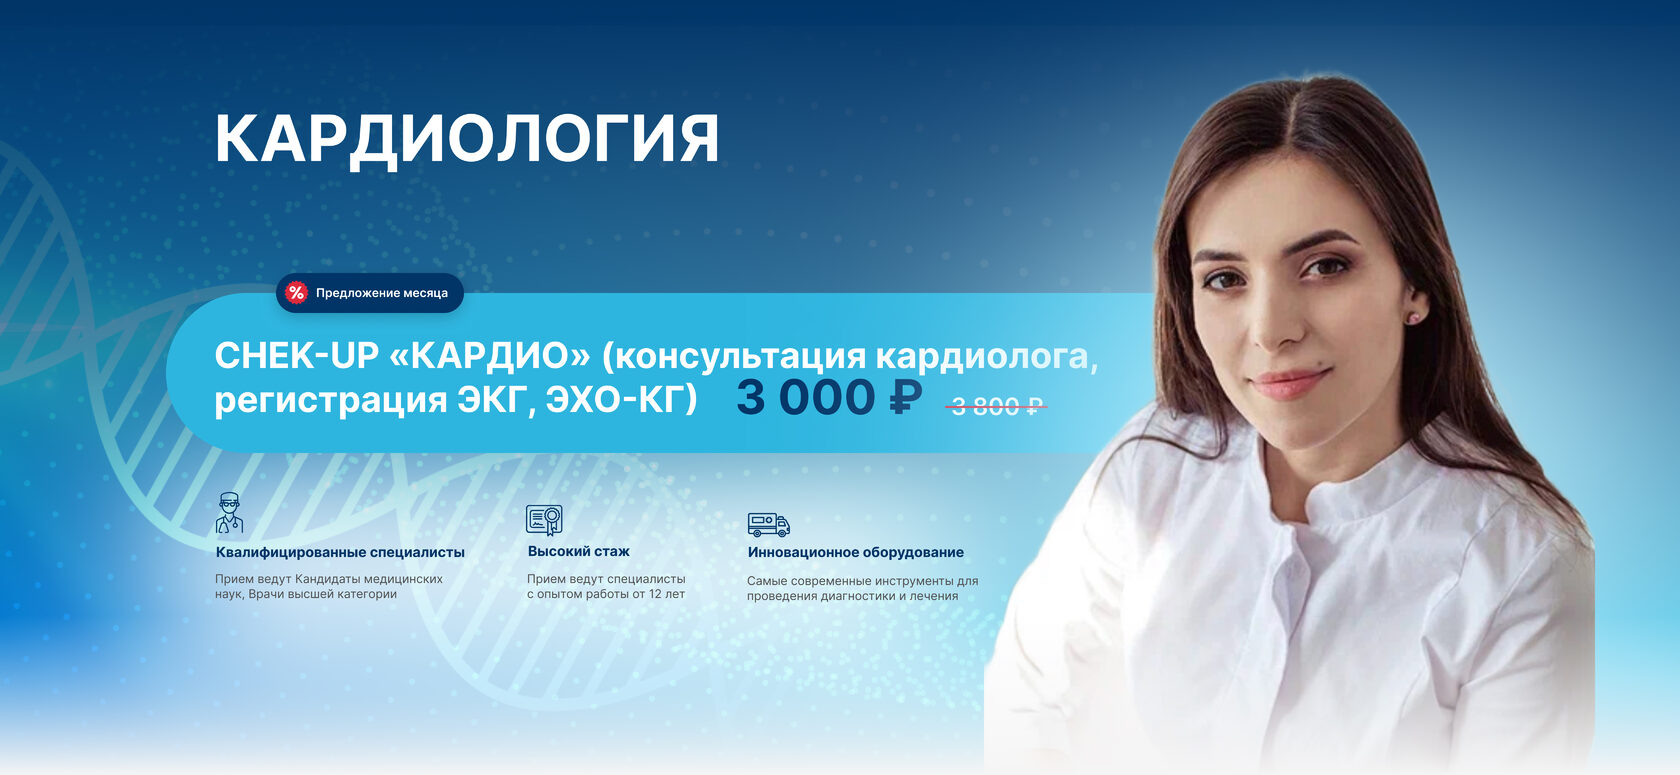 Моя Аптека Новосибирск Официальный Сайт Заказать Лекарства